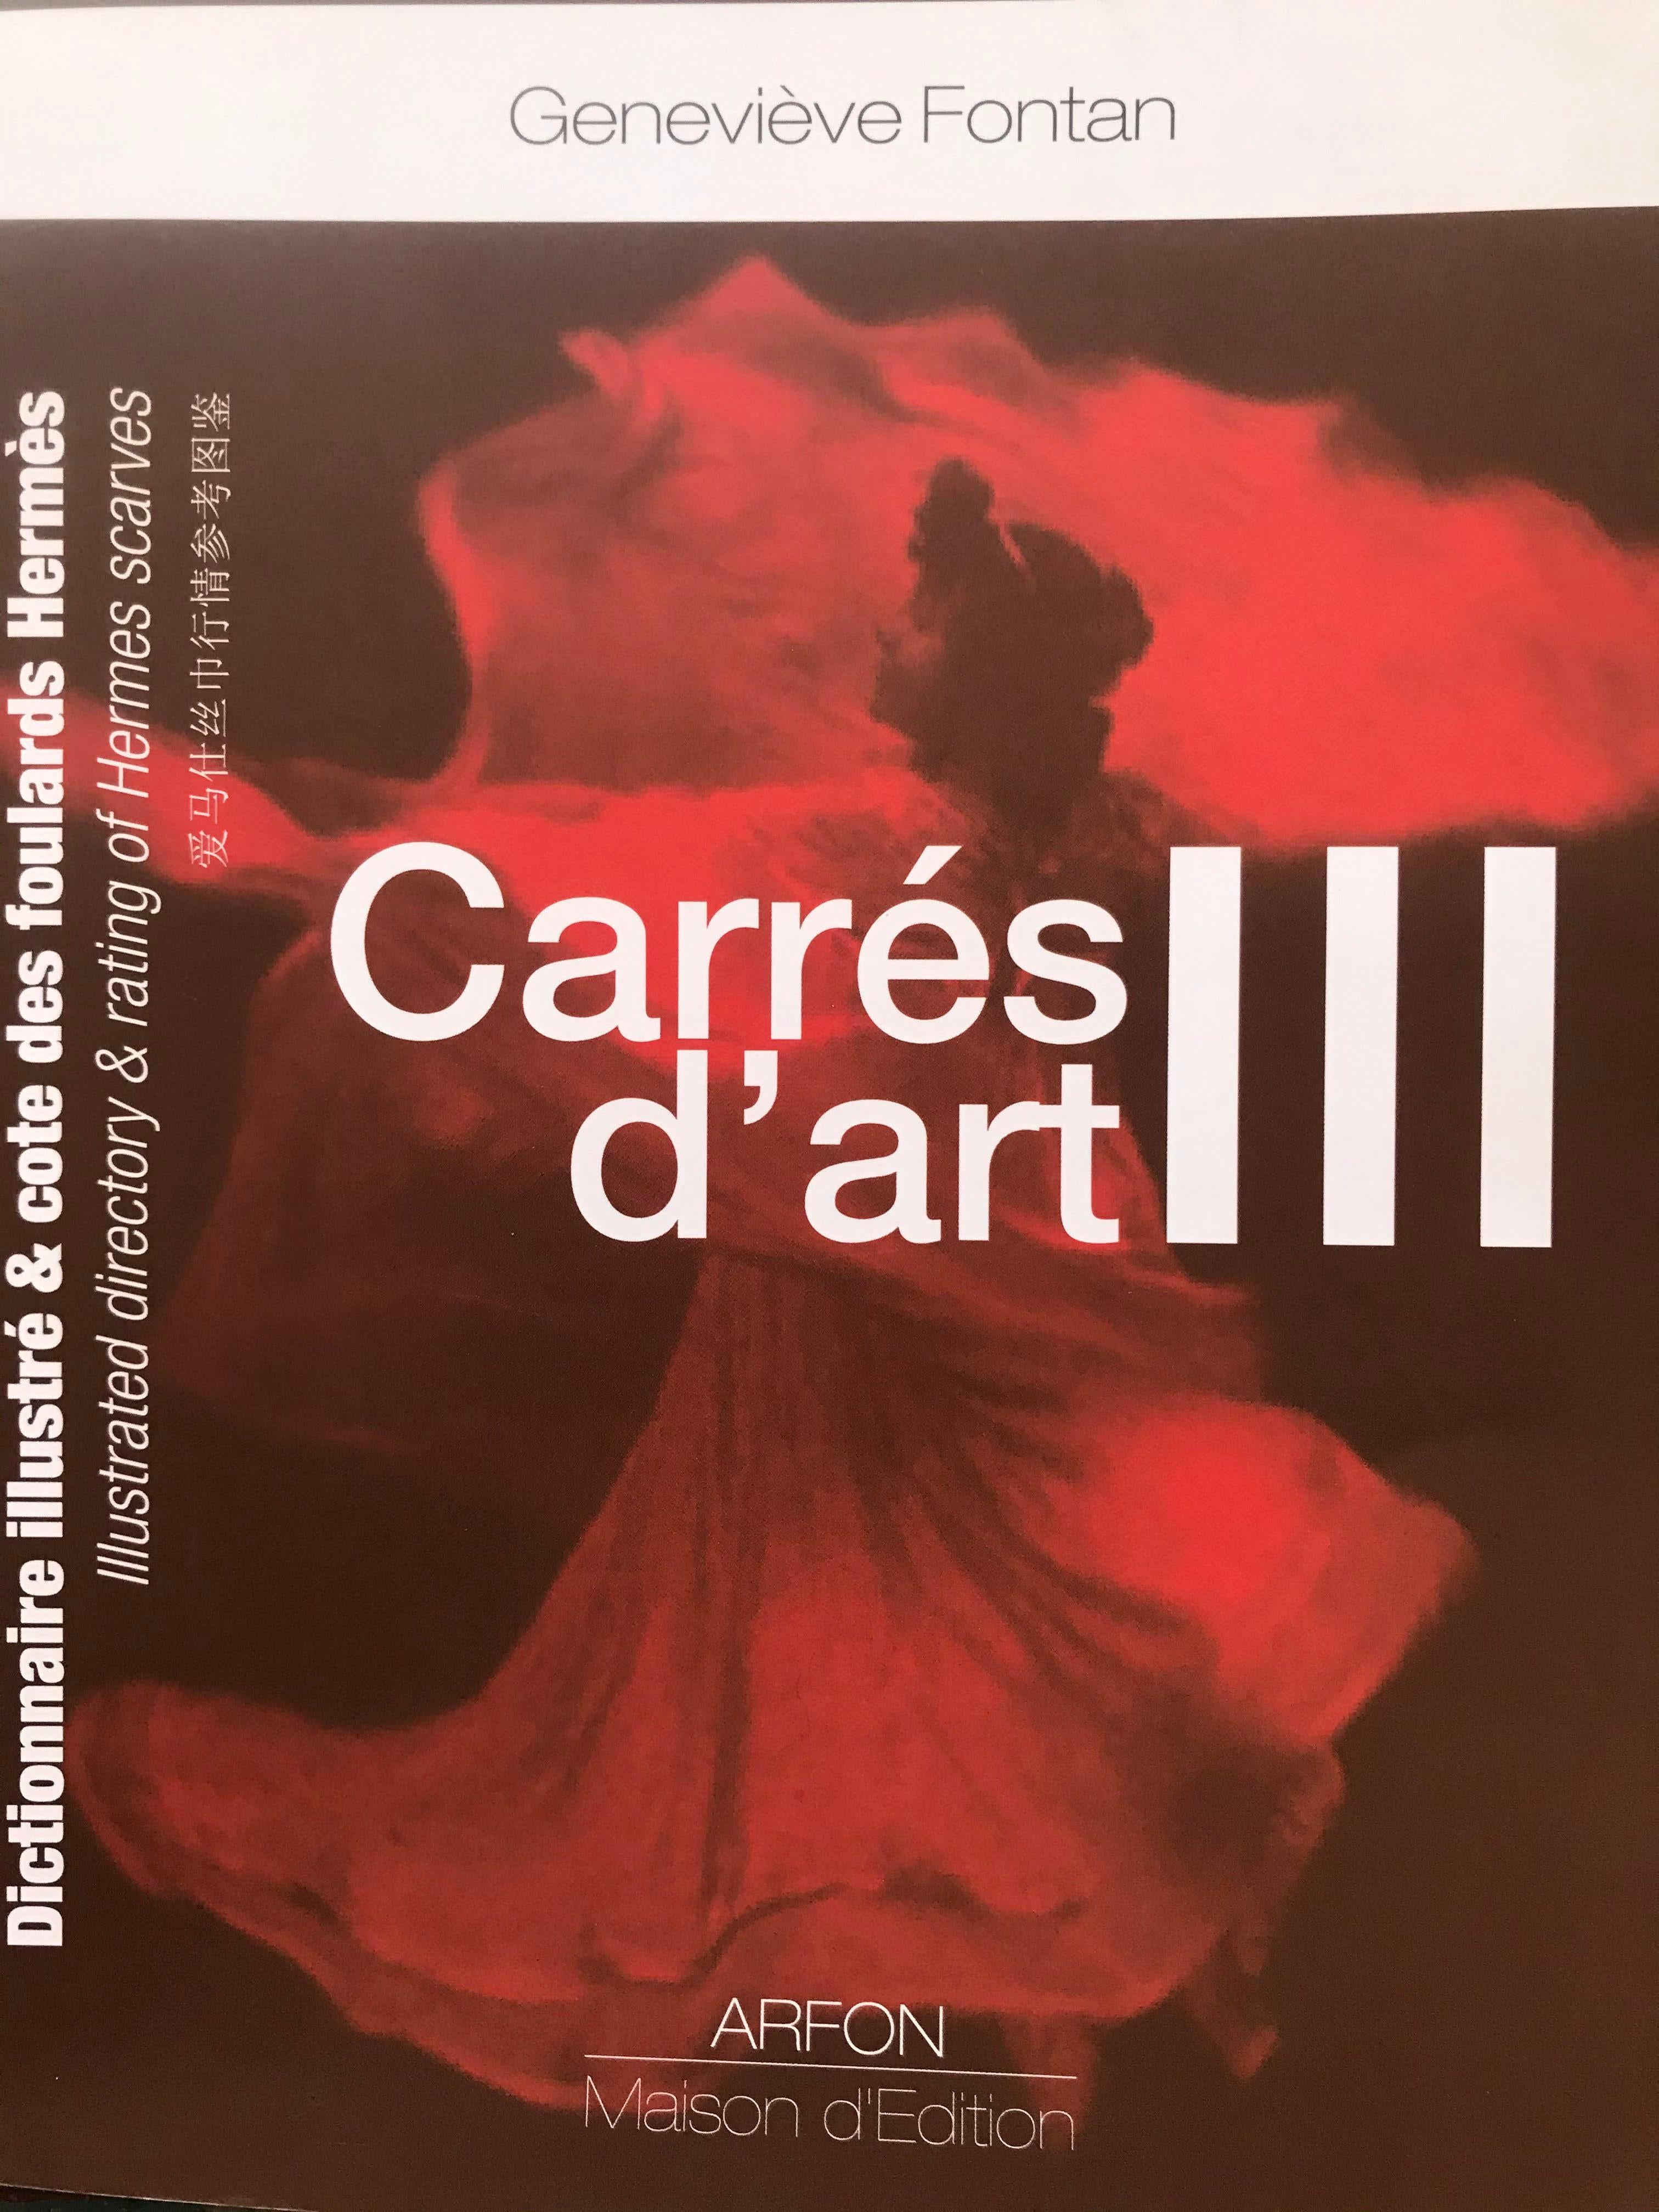 Rare Carré Hermès or Scarf 